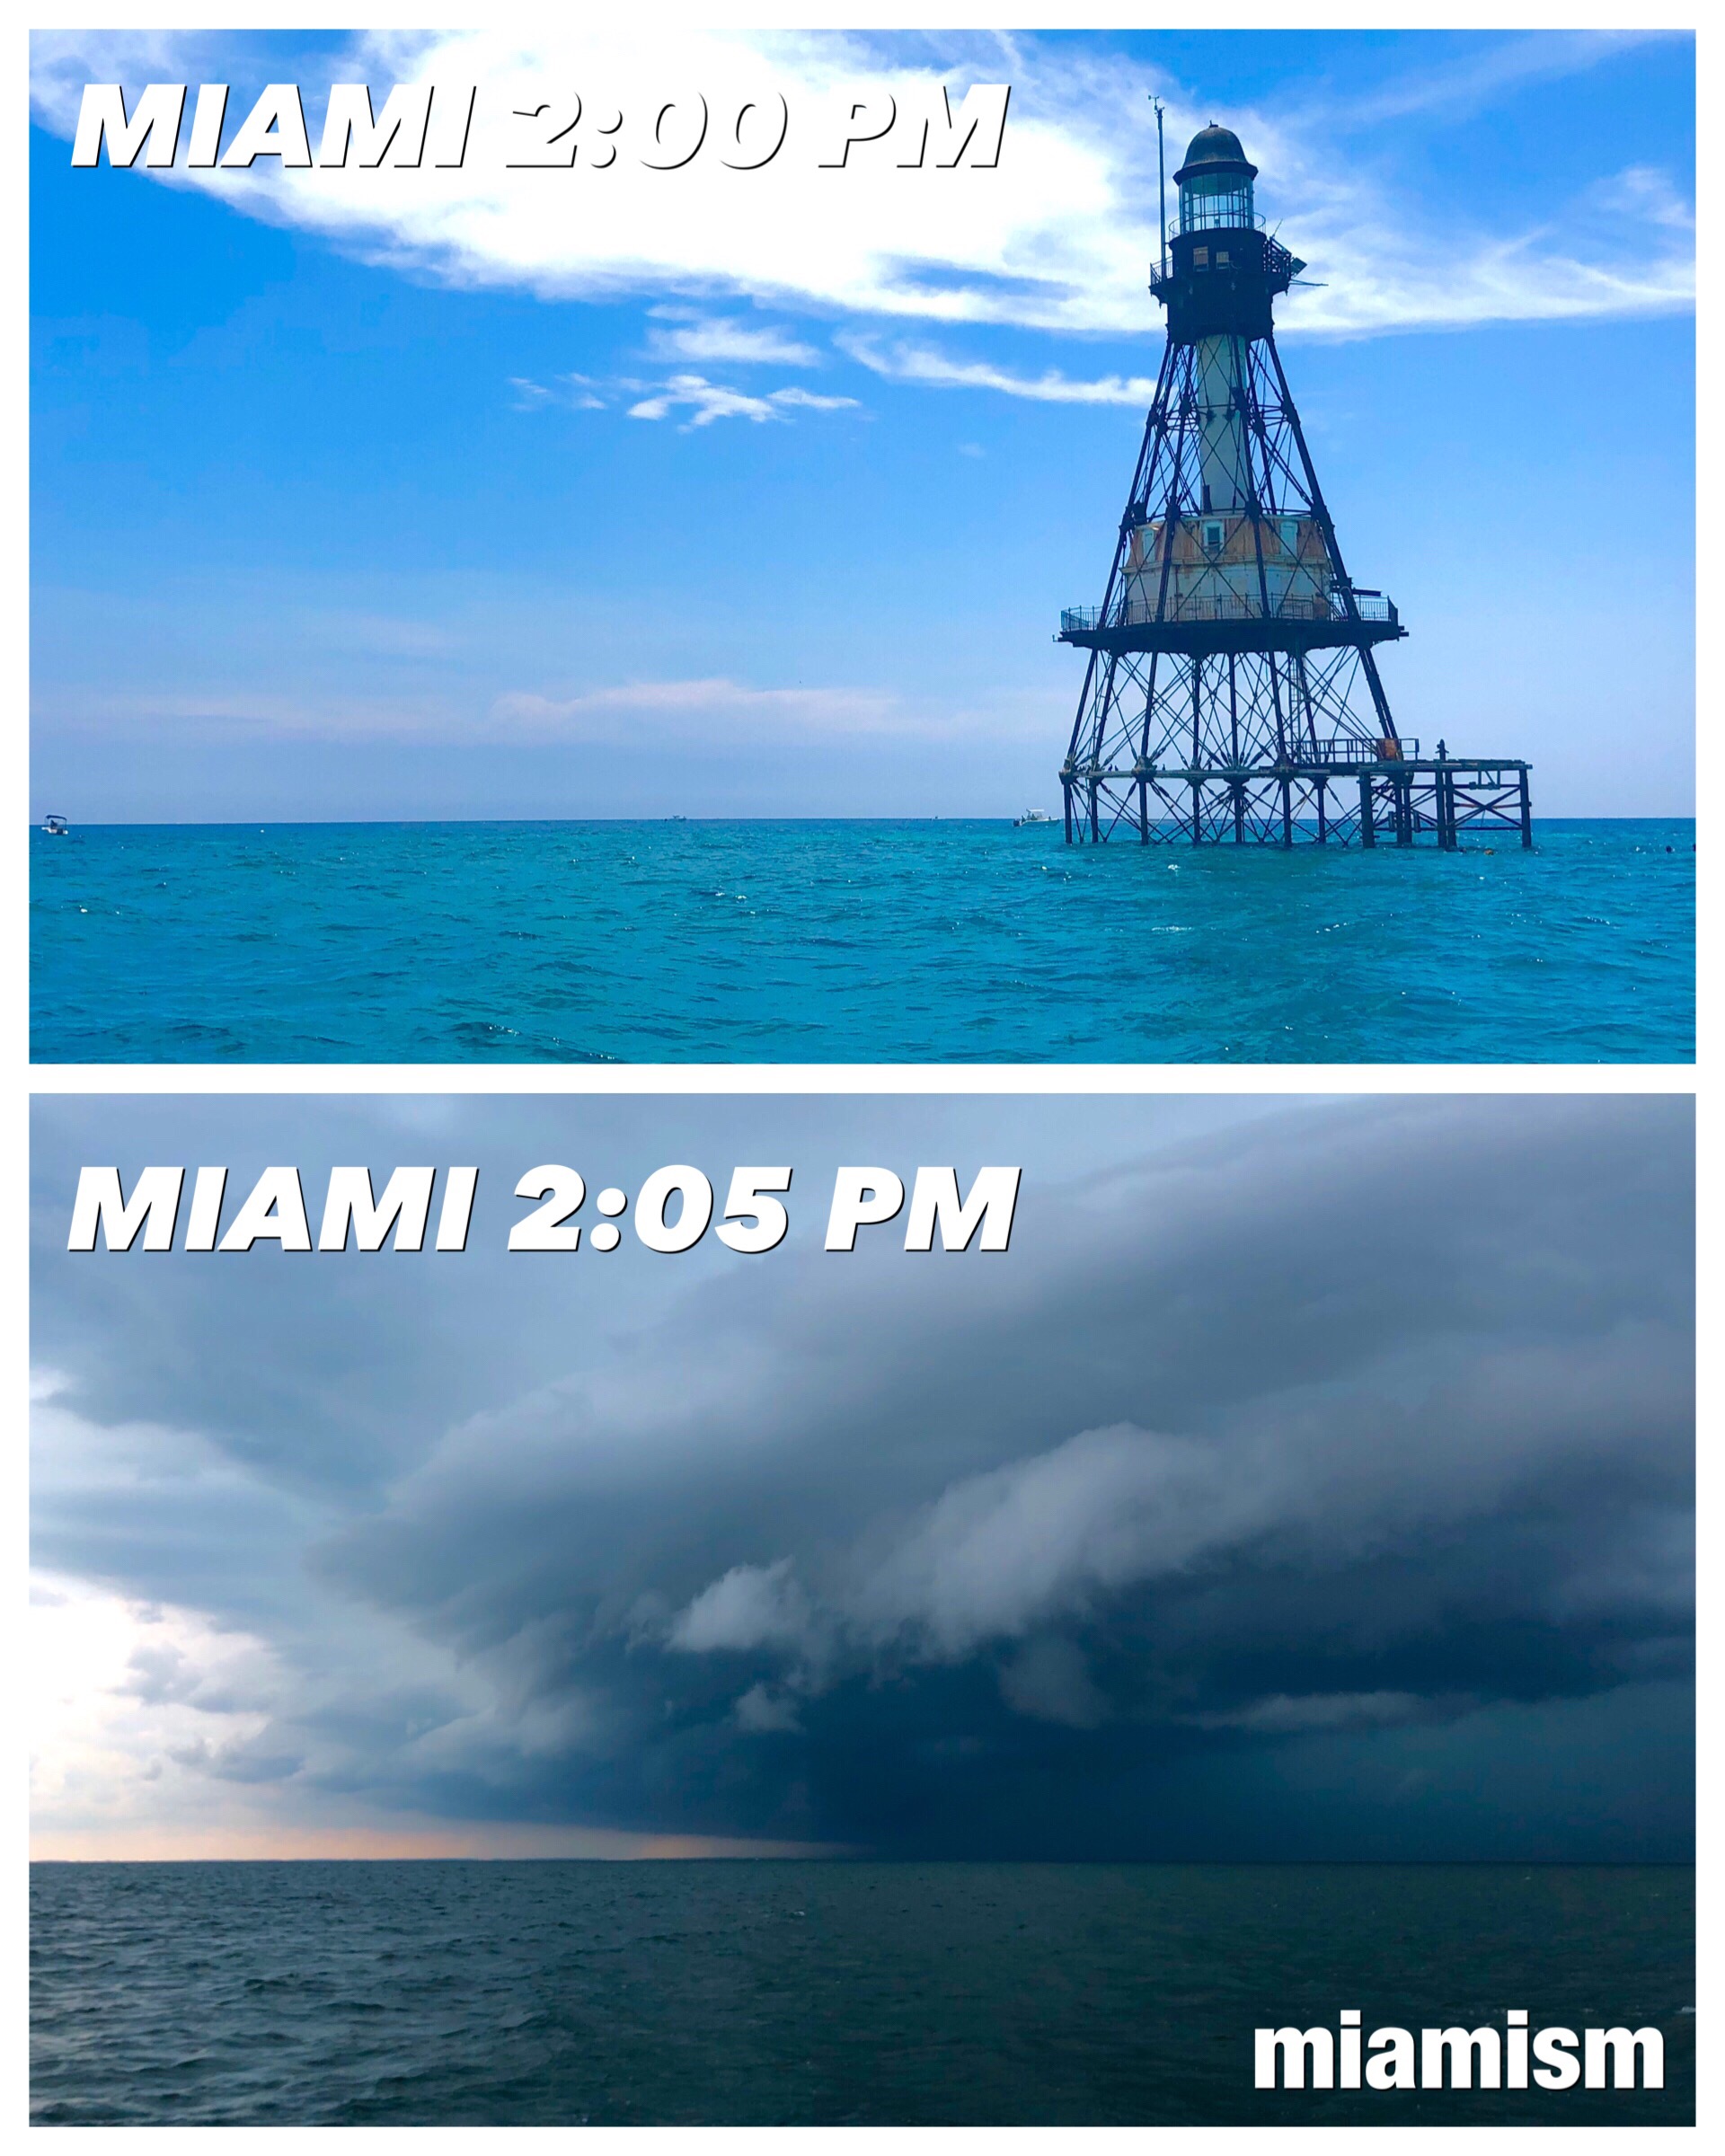 Miami's unpredictable weather